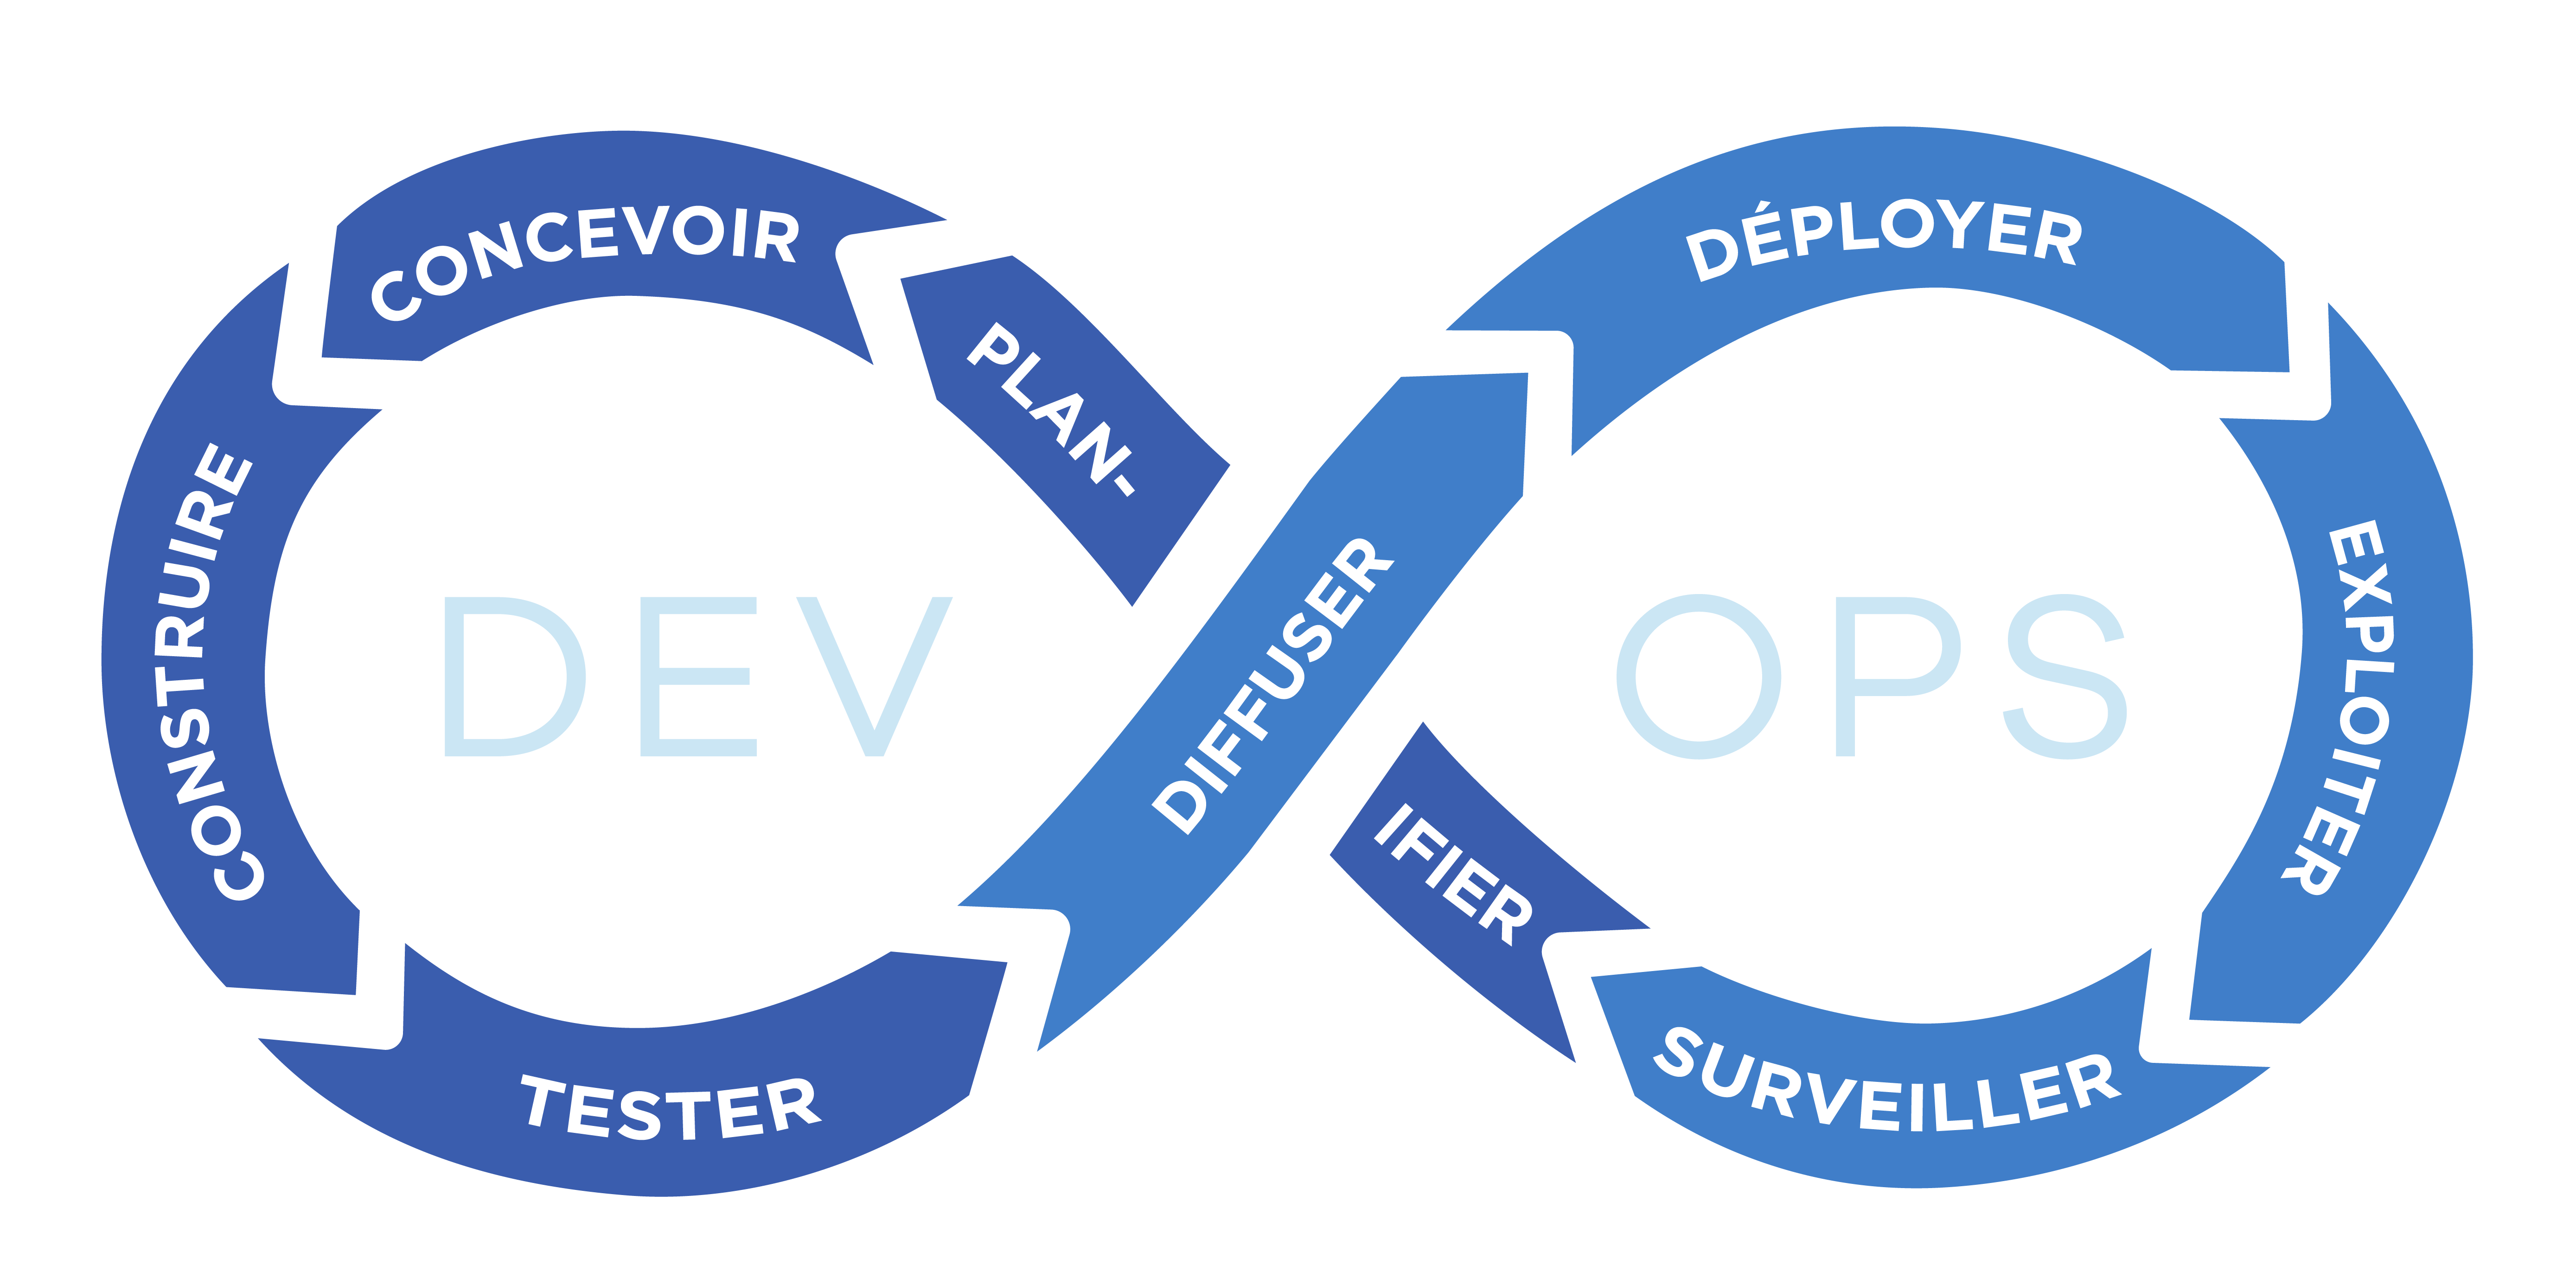 La boucle infinie de DevOps : planifier, concevoir, construire, tester, diffuser, déployer, exploiter, surveiller...